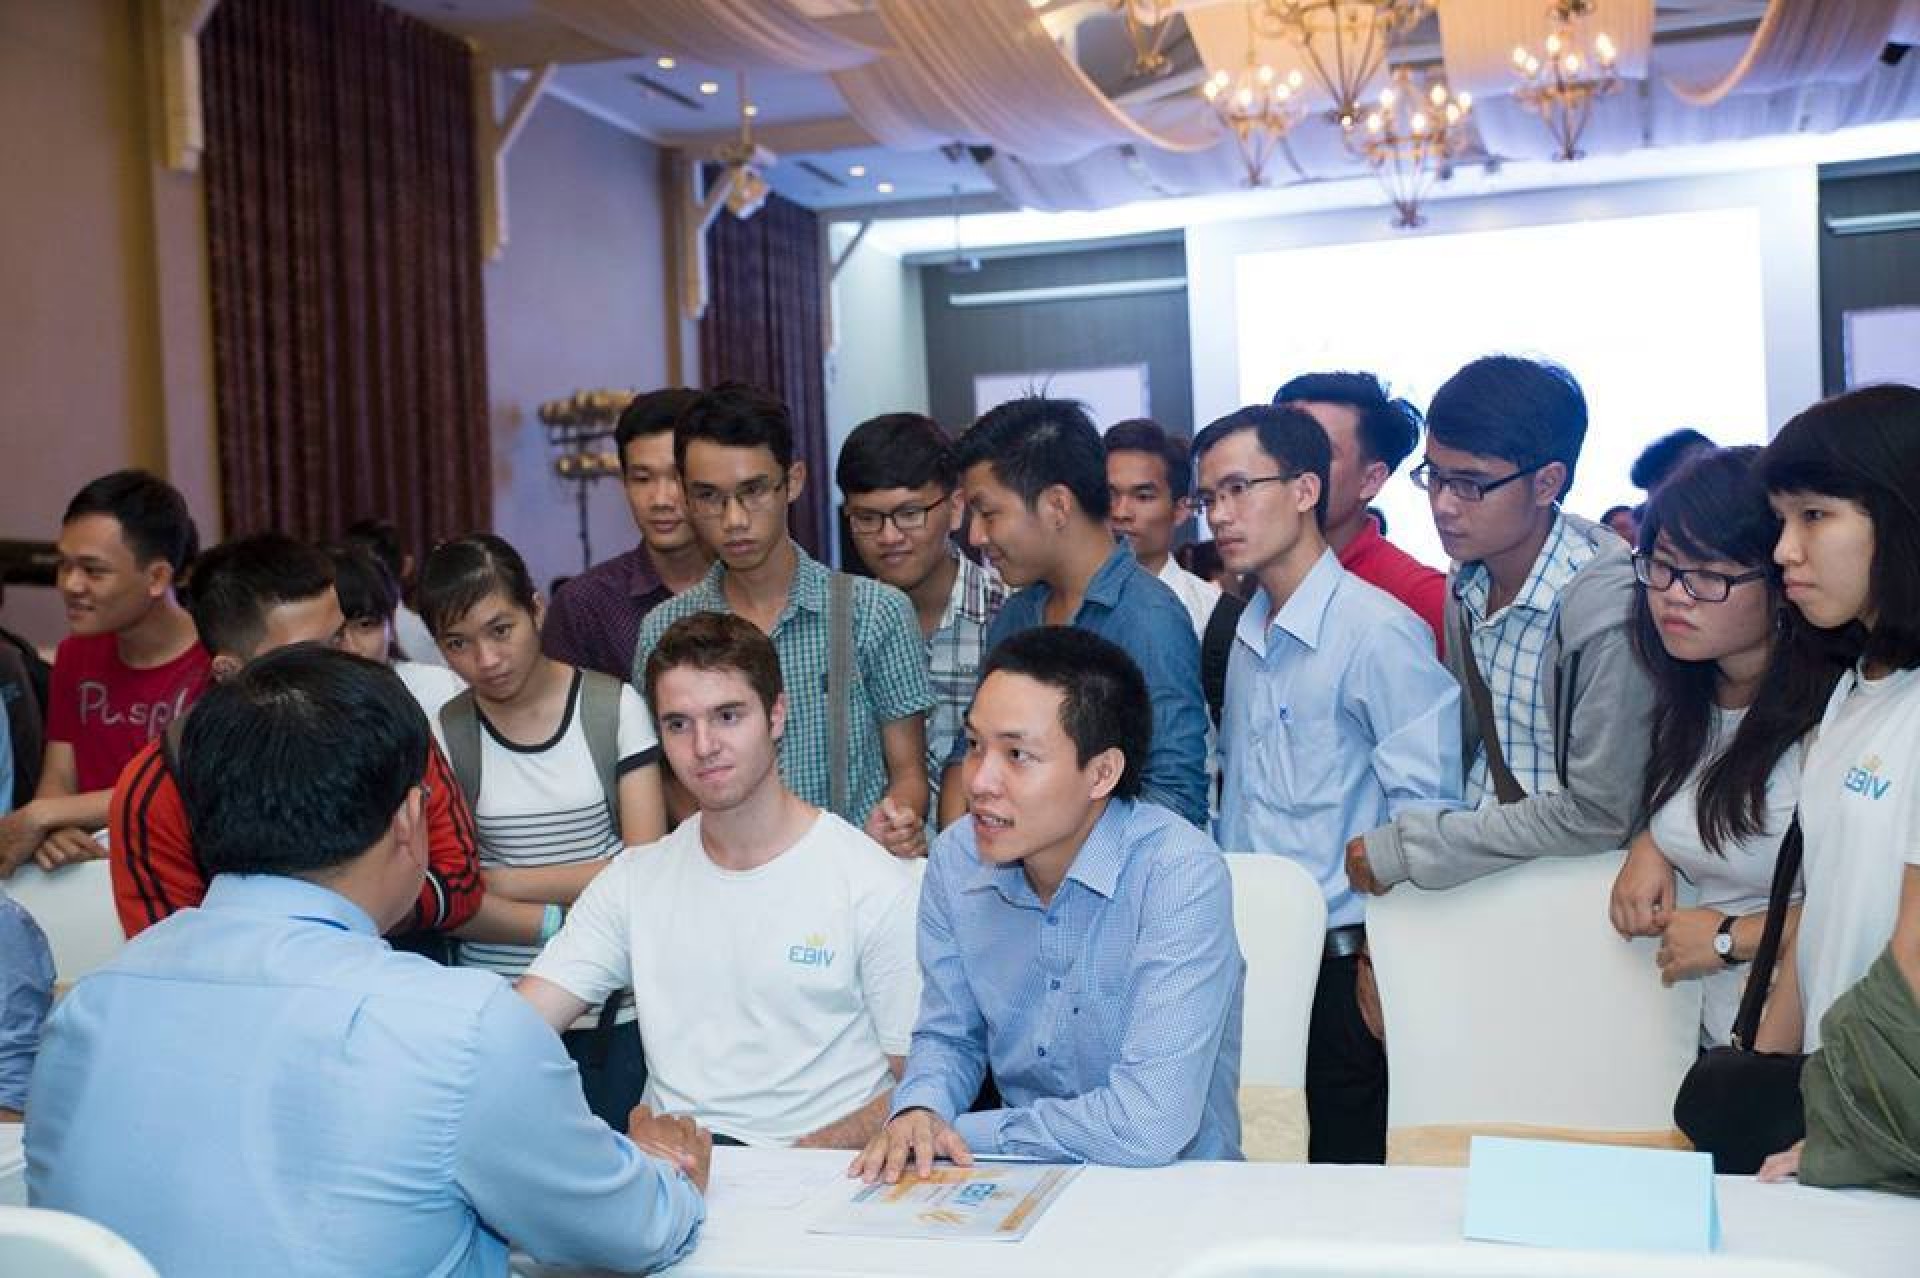 Chúc mừng EBIV lọp vào Top 30 Startup Việt 2016 do báo Vnexpress tổ chức